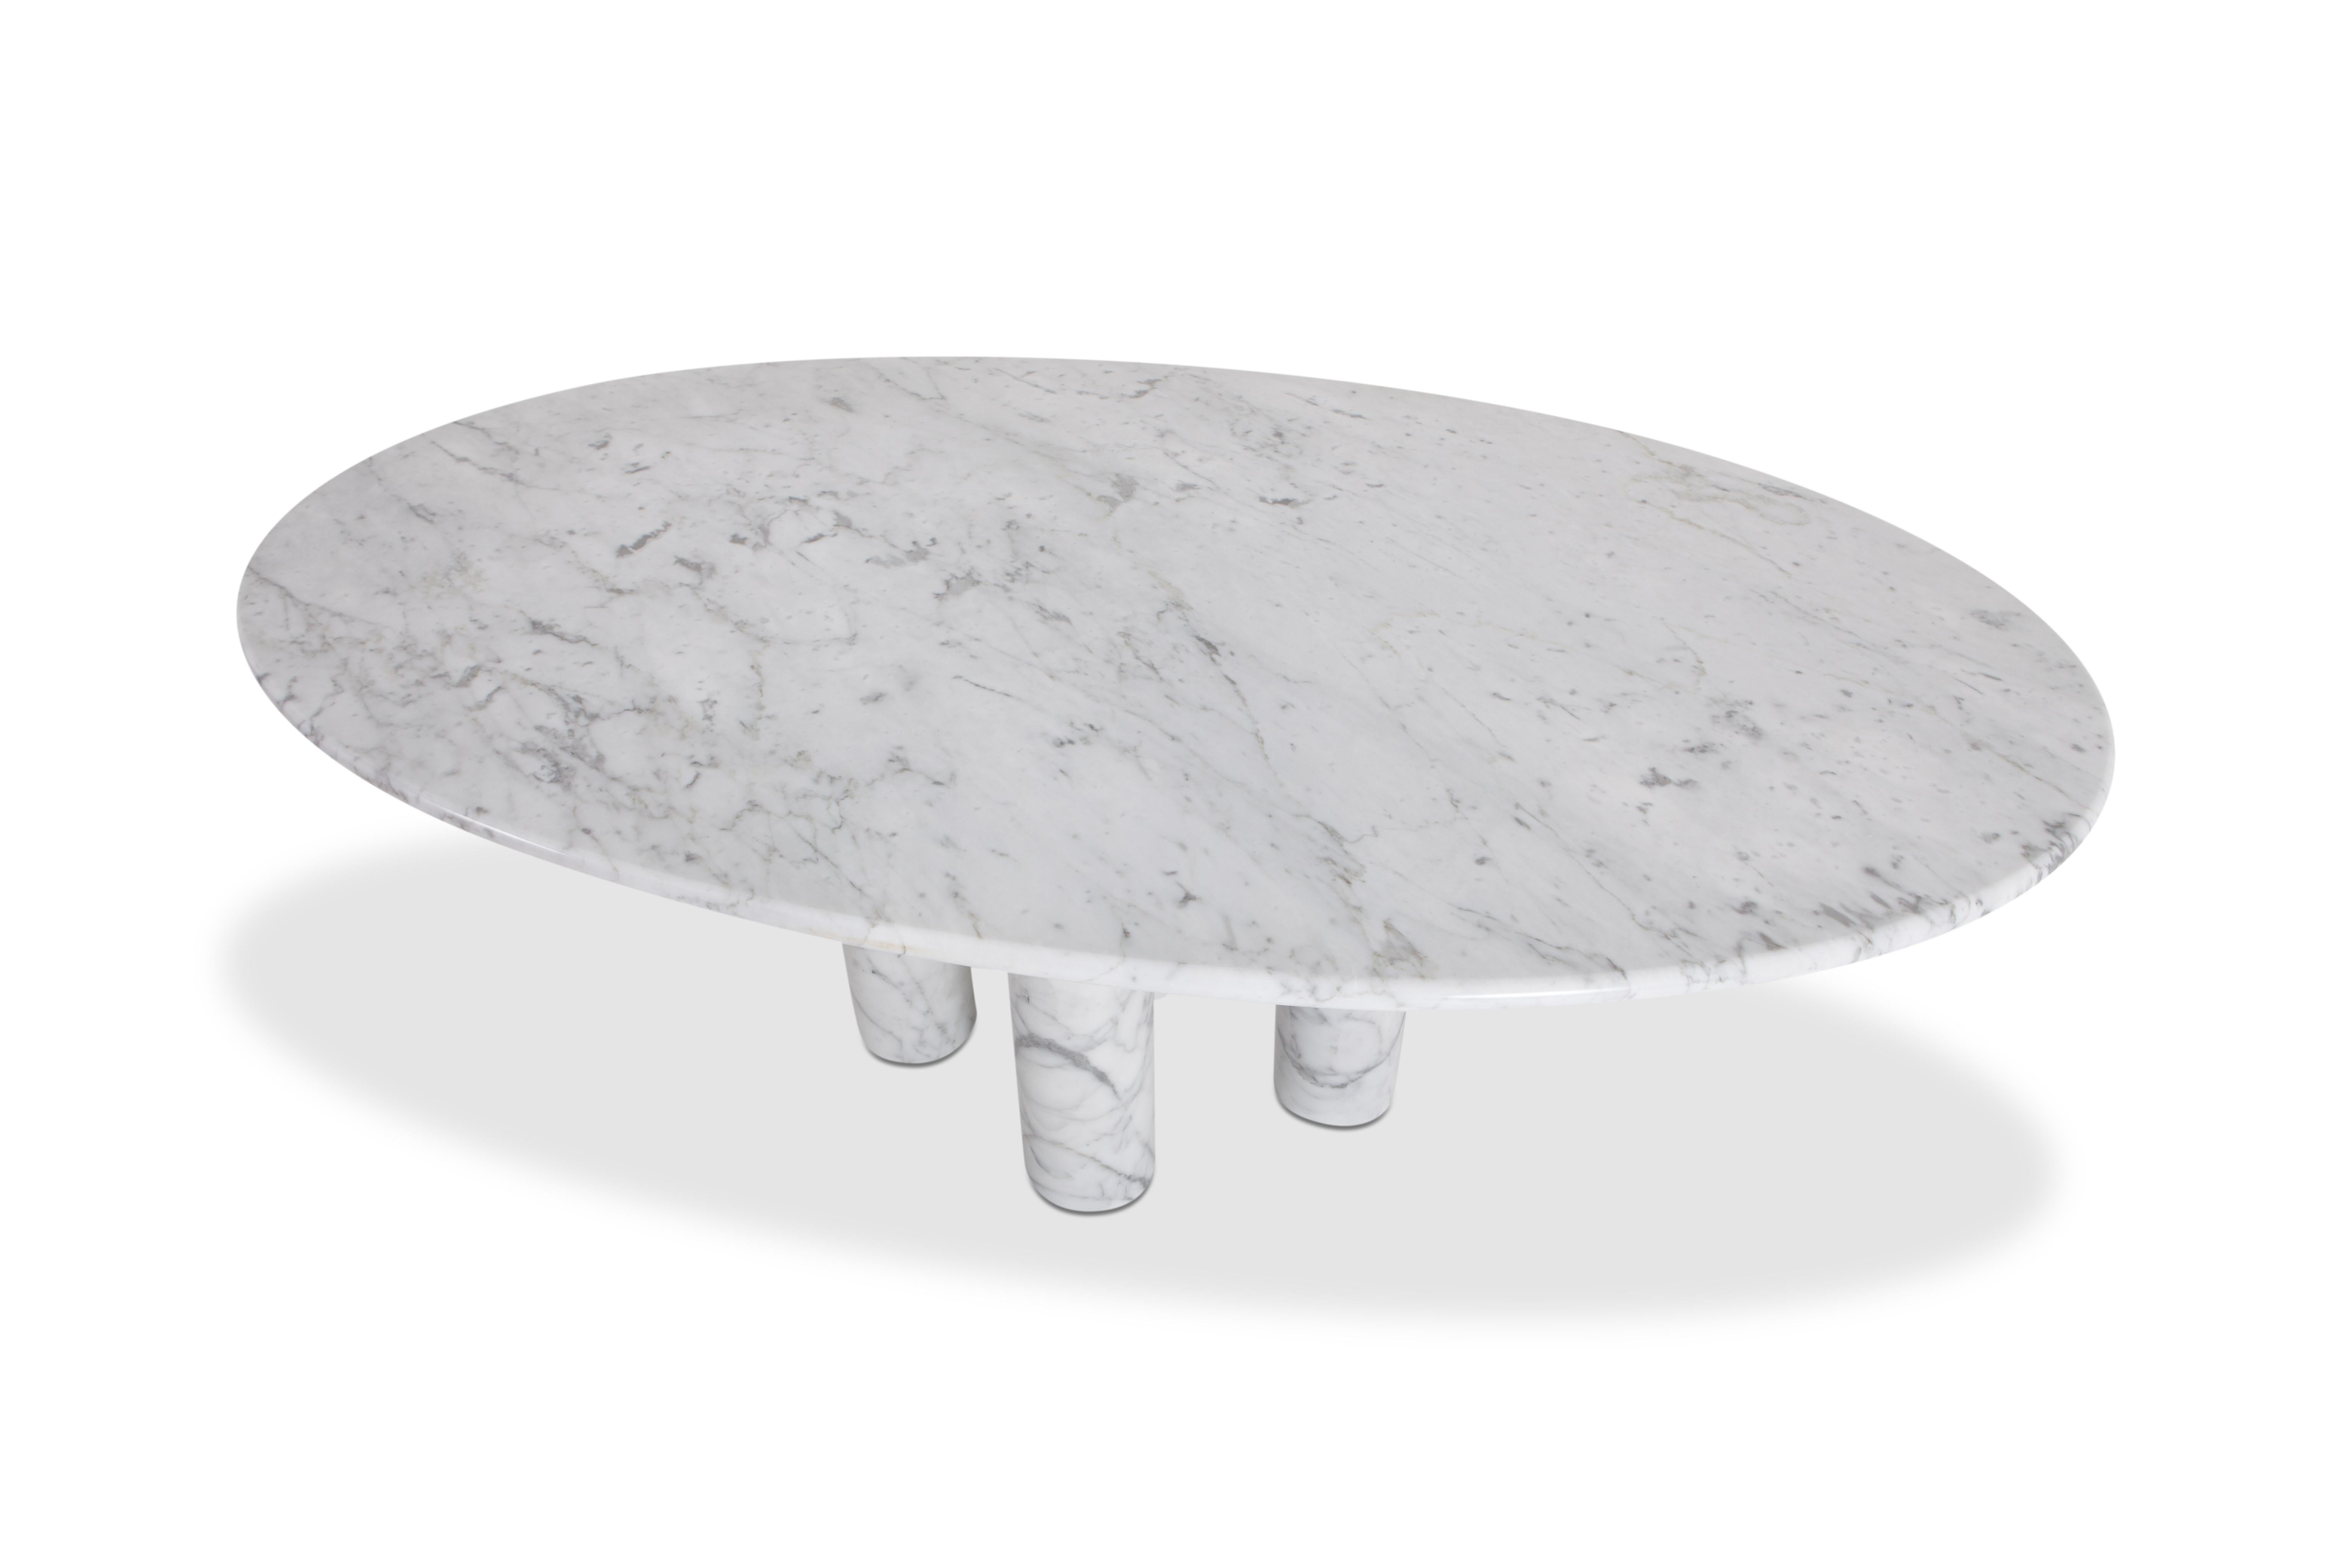 Mario Bellini's 'Il Colonnata' oval table in white marble 1